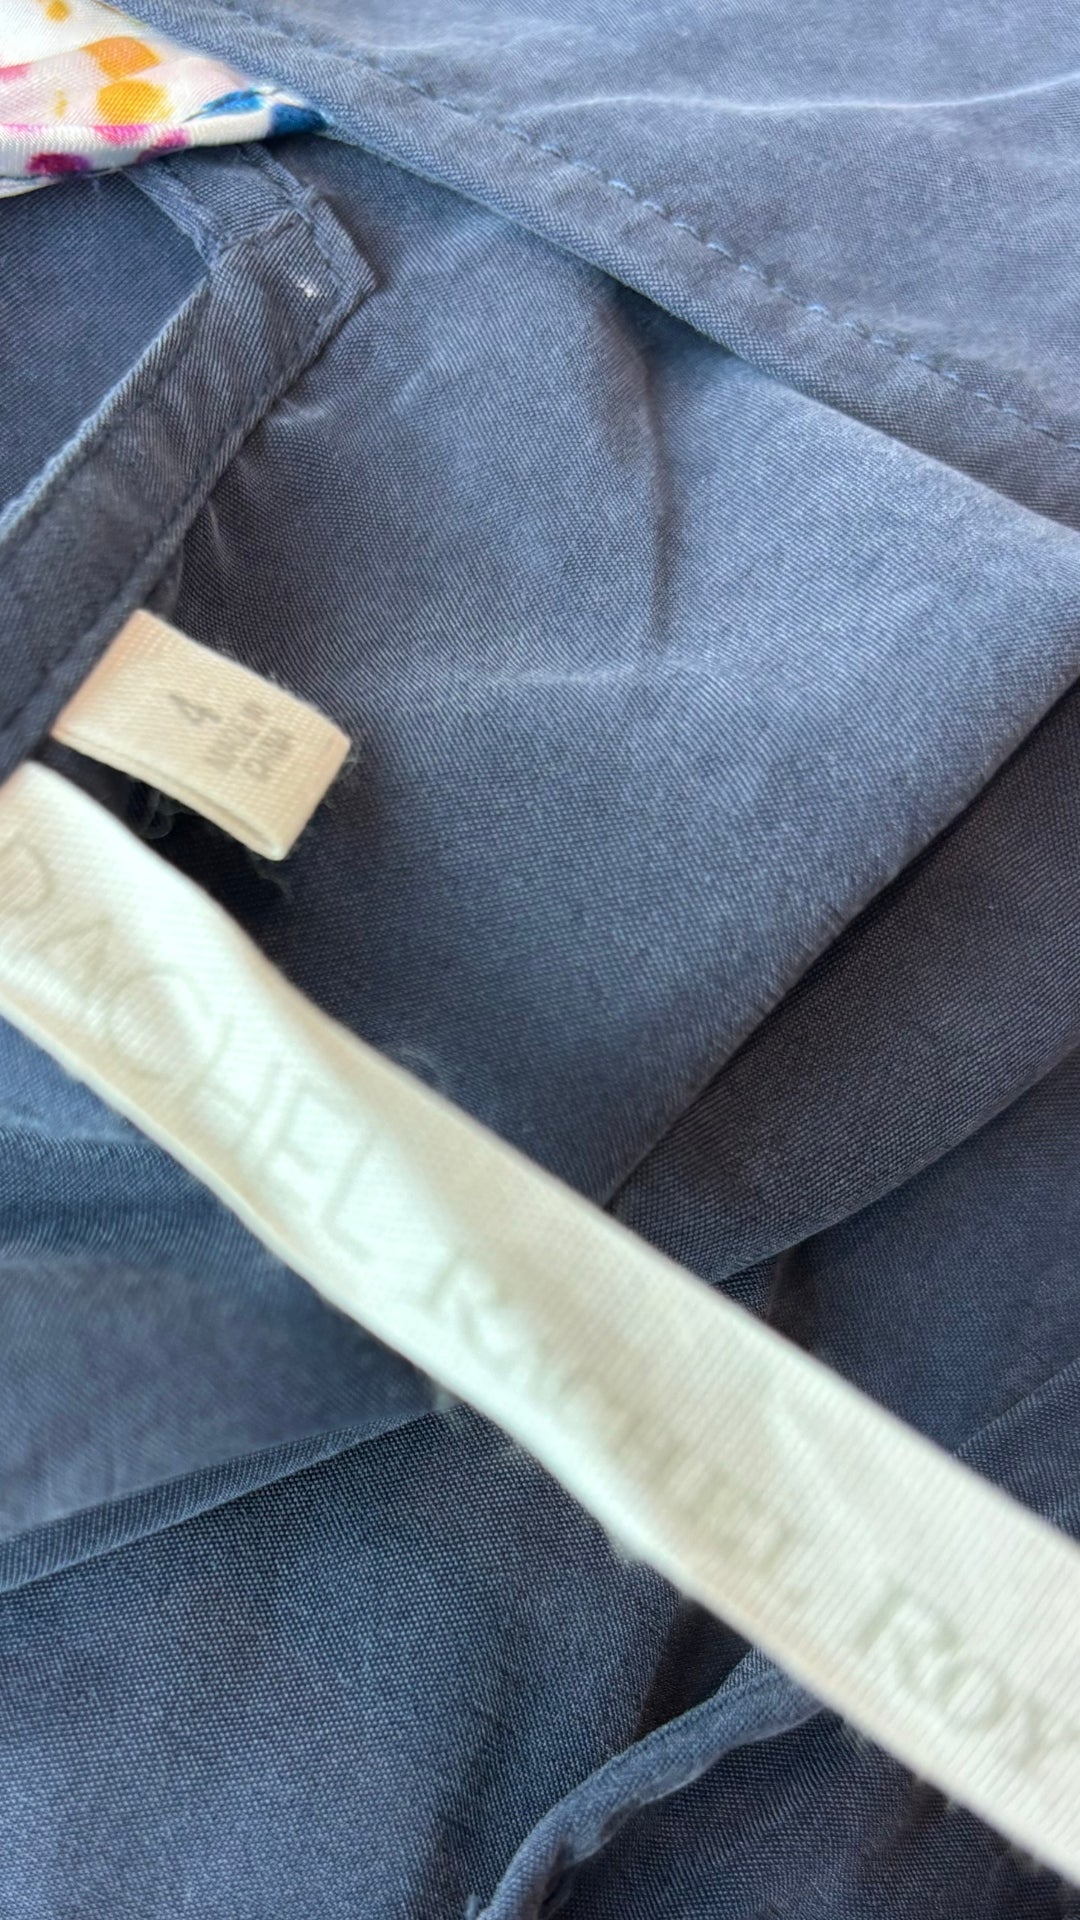 Robe bleue fluide douce Rachel Rachel Roy, taille 4 (xs/s). Vue de l'étiquette de marque.